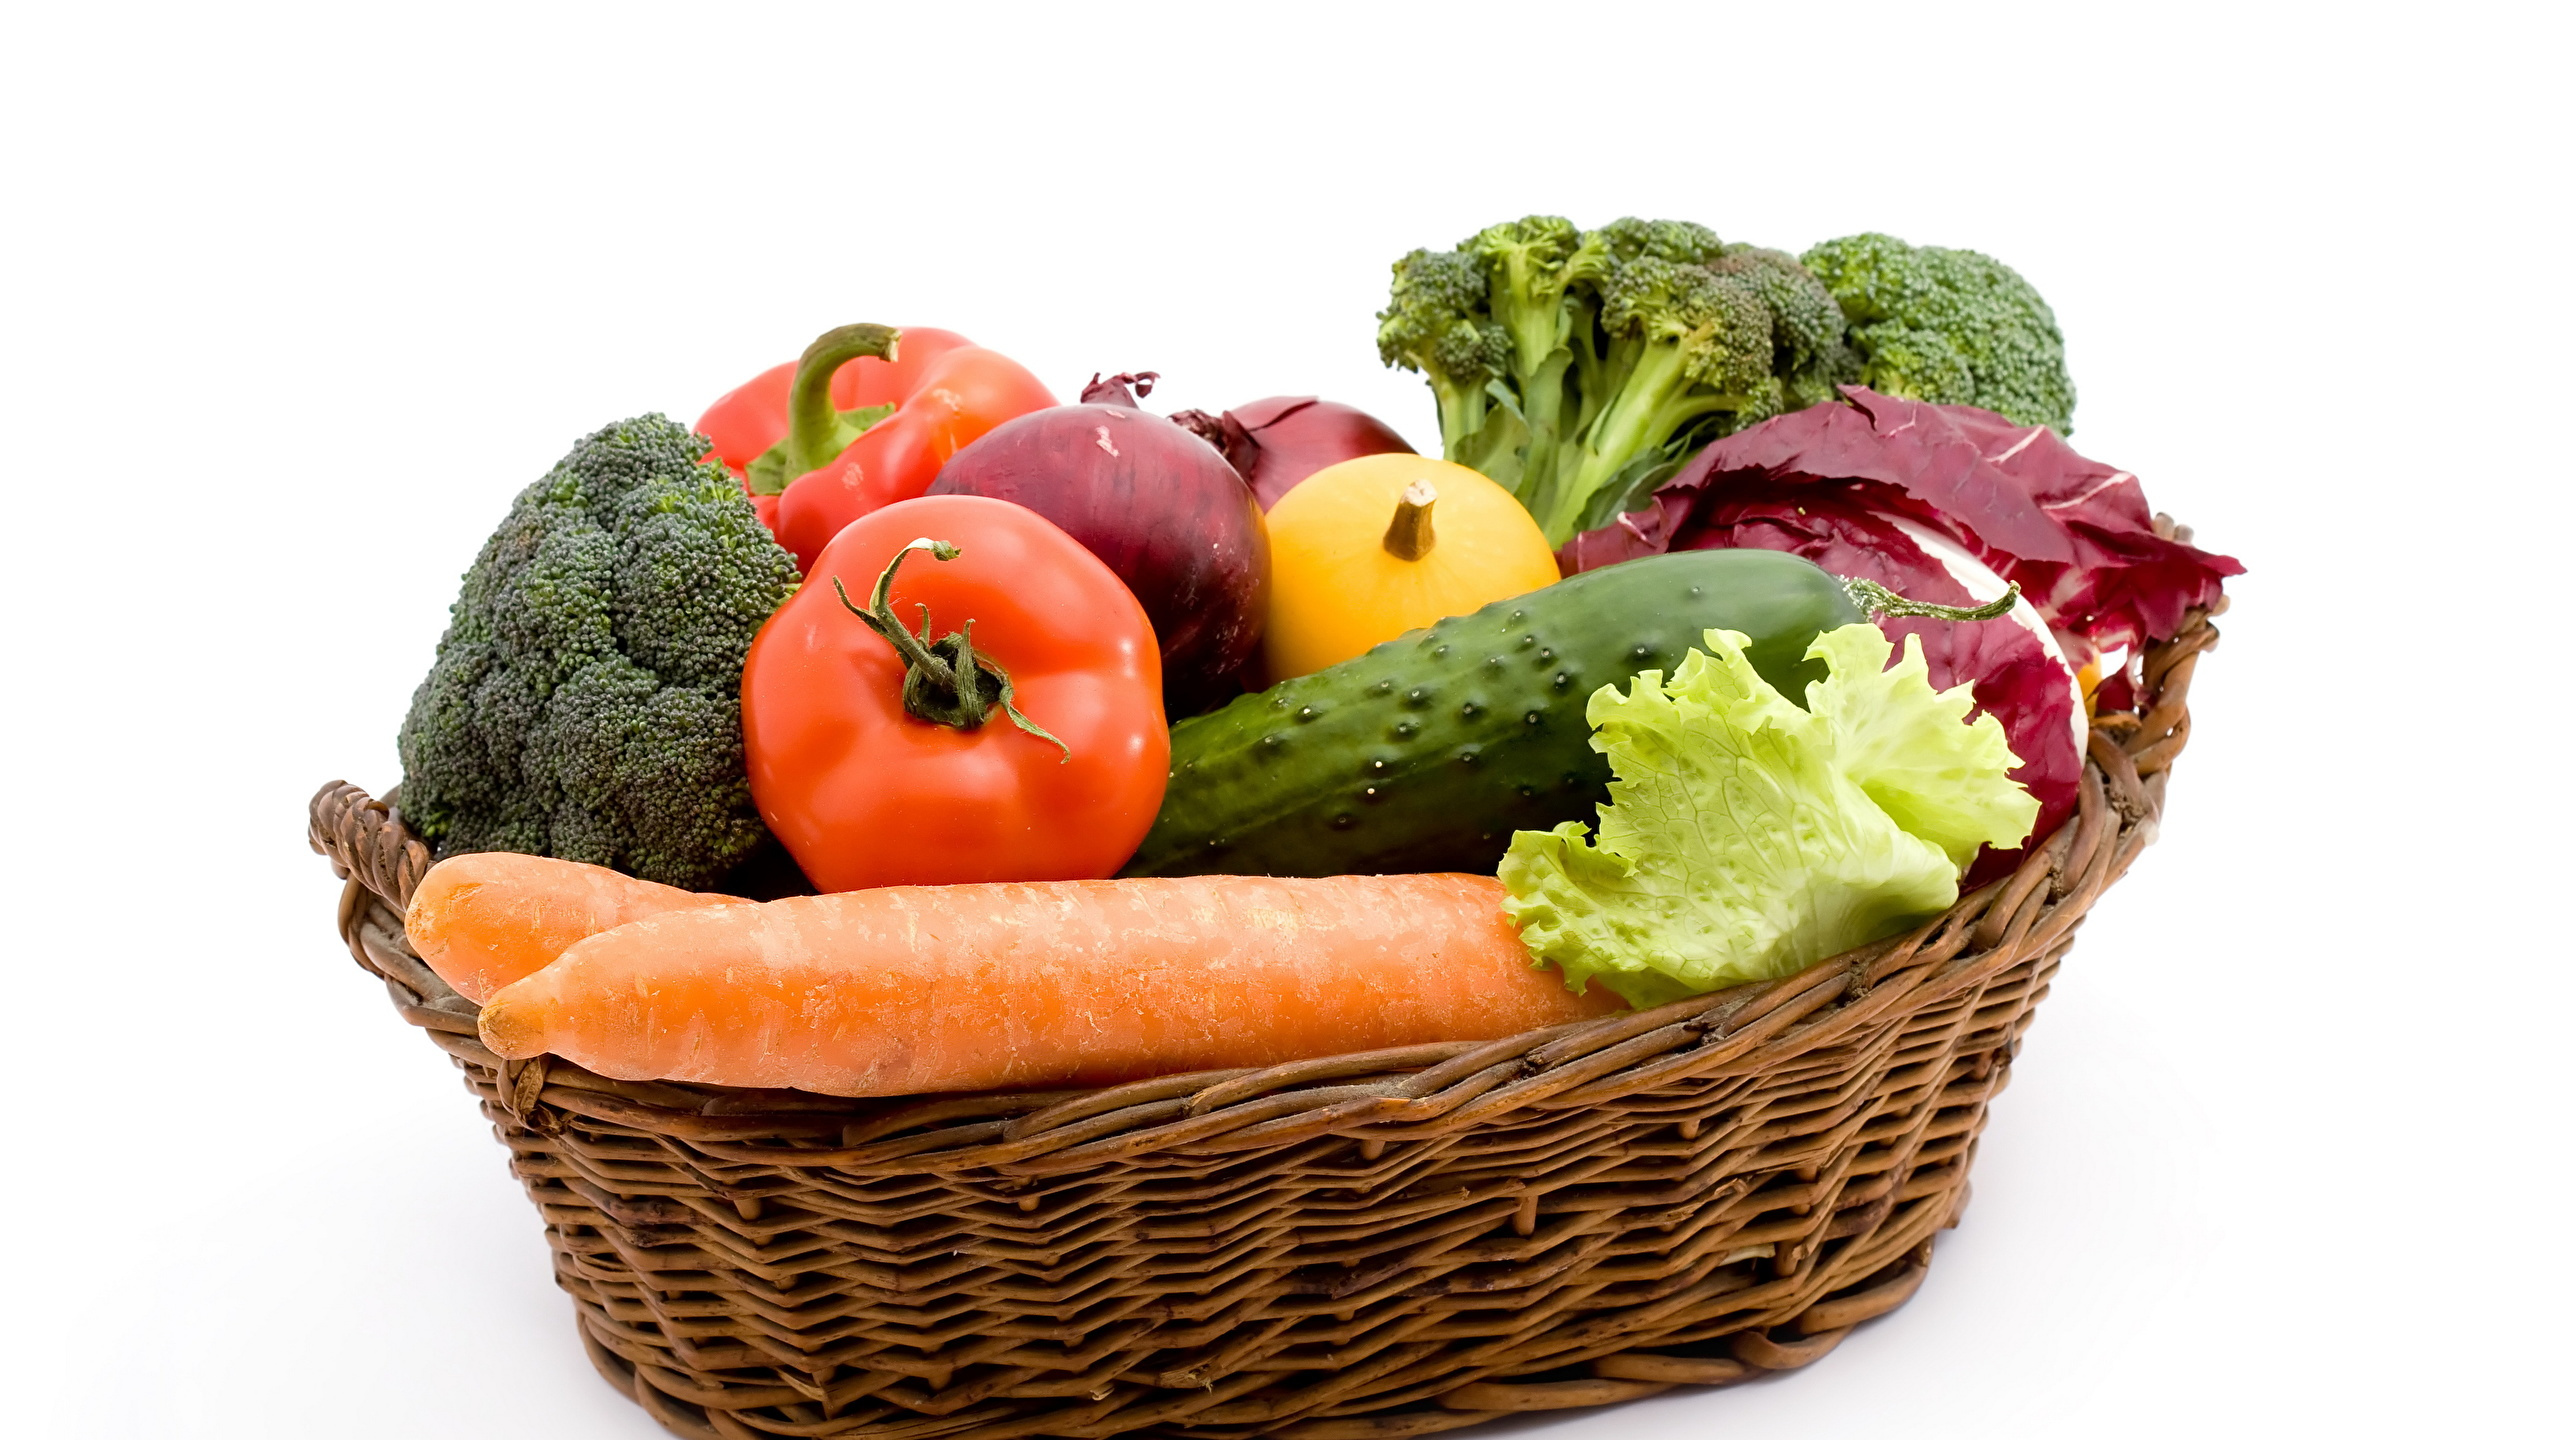 素食, 篮子里, 胡萝卜, 天然的食物, 食品 壁纸 2560x1440 允许